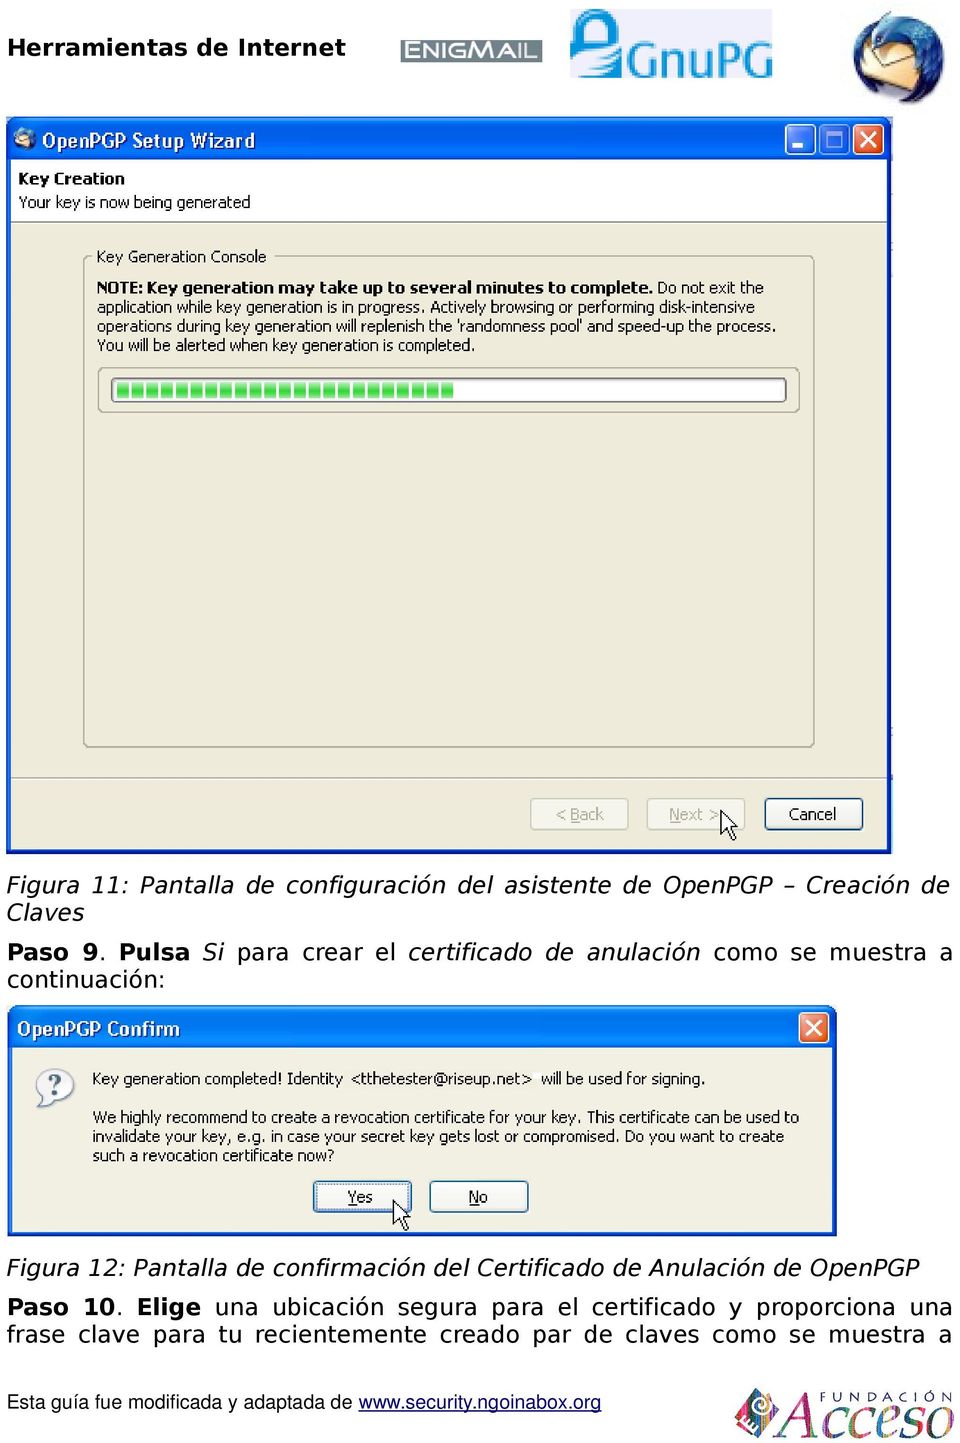 Pantalla de confirmación del Certificado de Anulación de OpenPGP Paso 10.